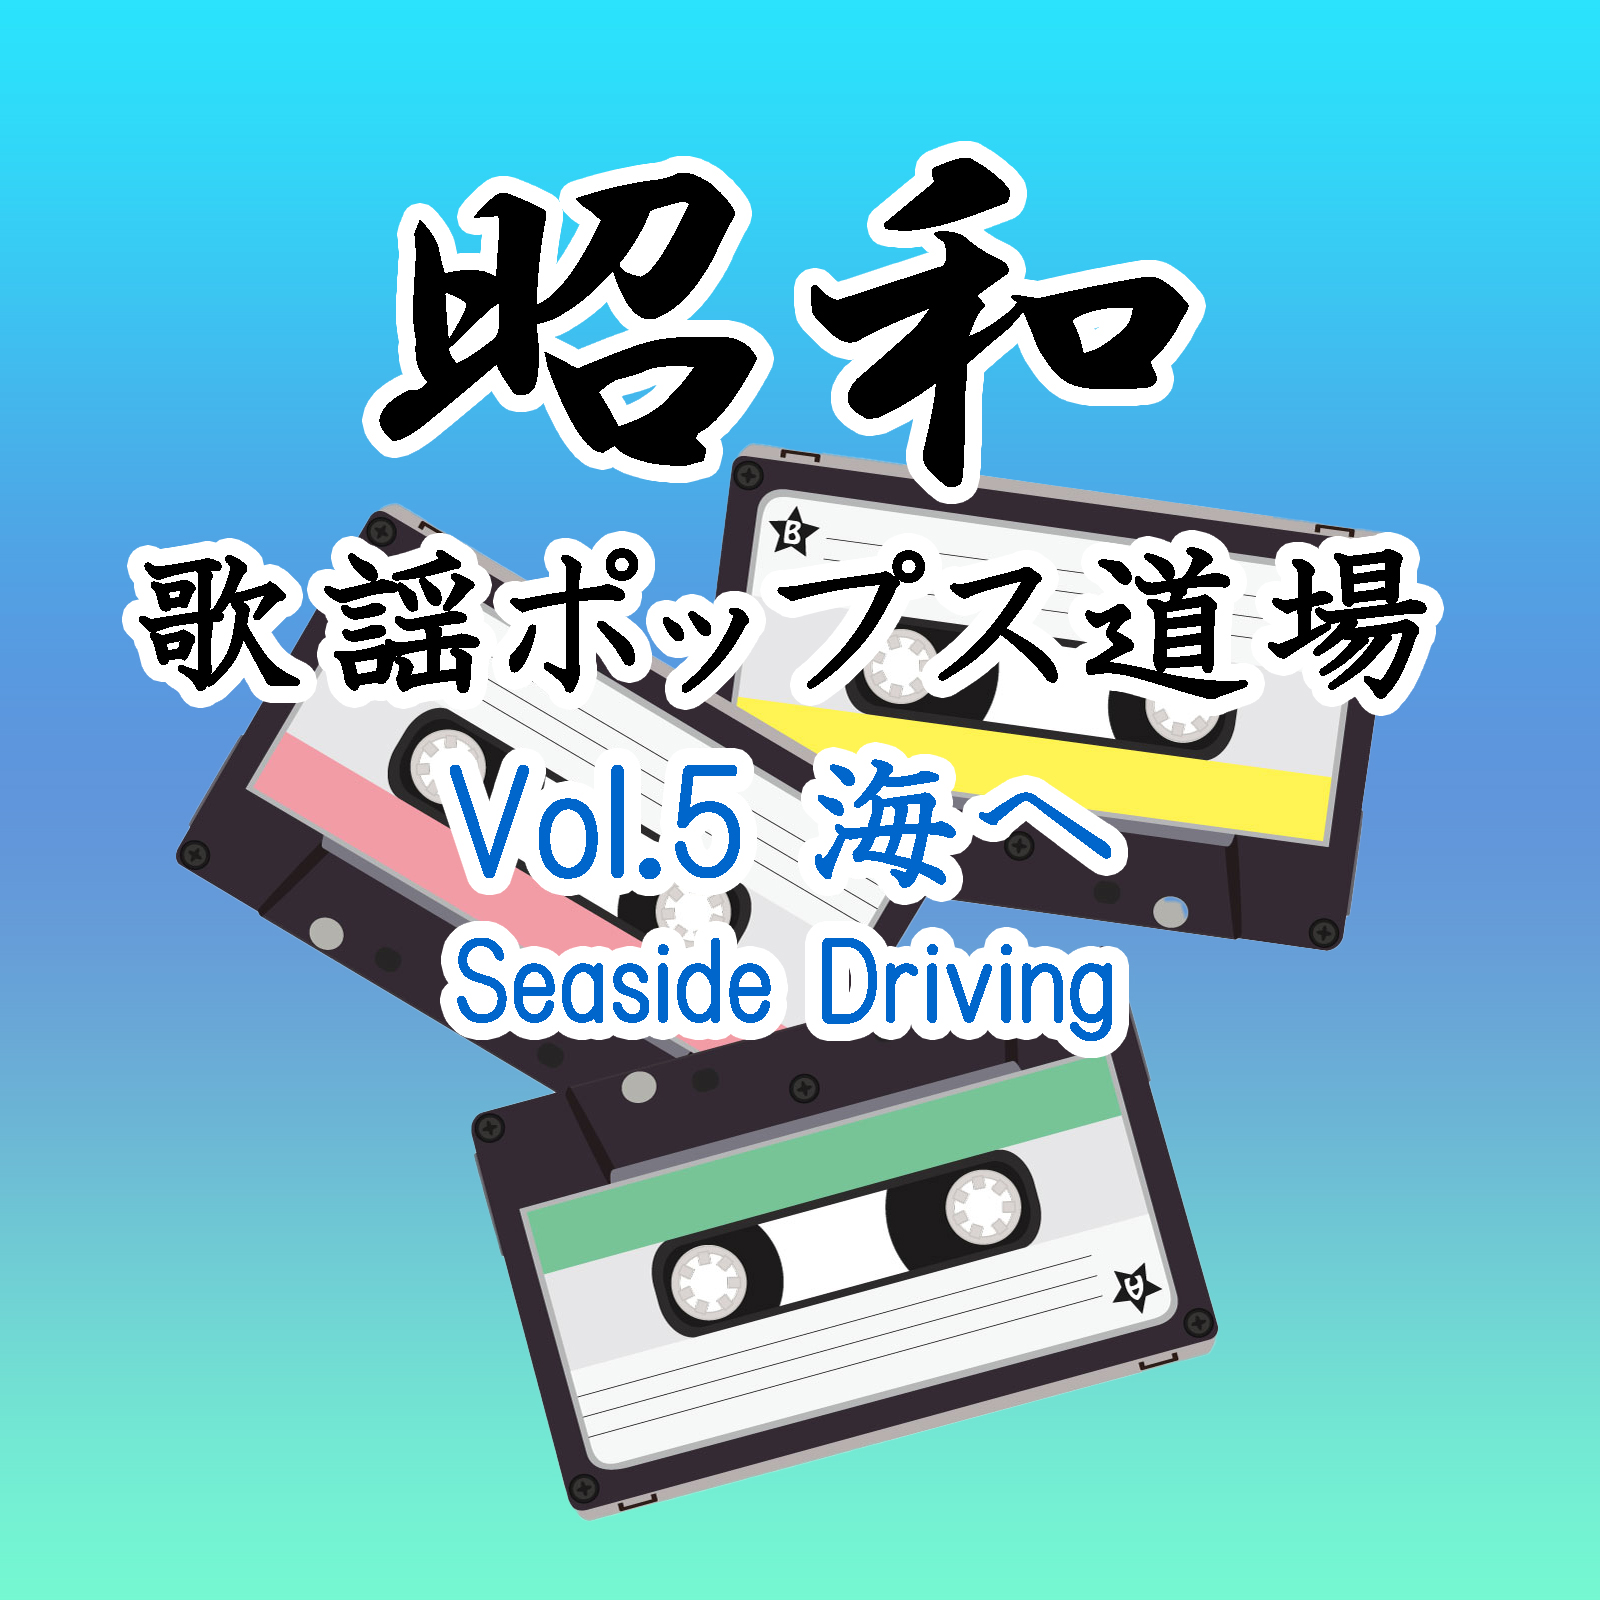 昭和歌謡ポップス道場 Vol.5 海へ - Seaside Driving